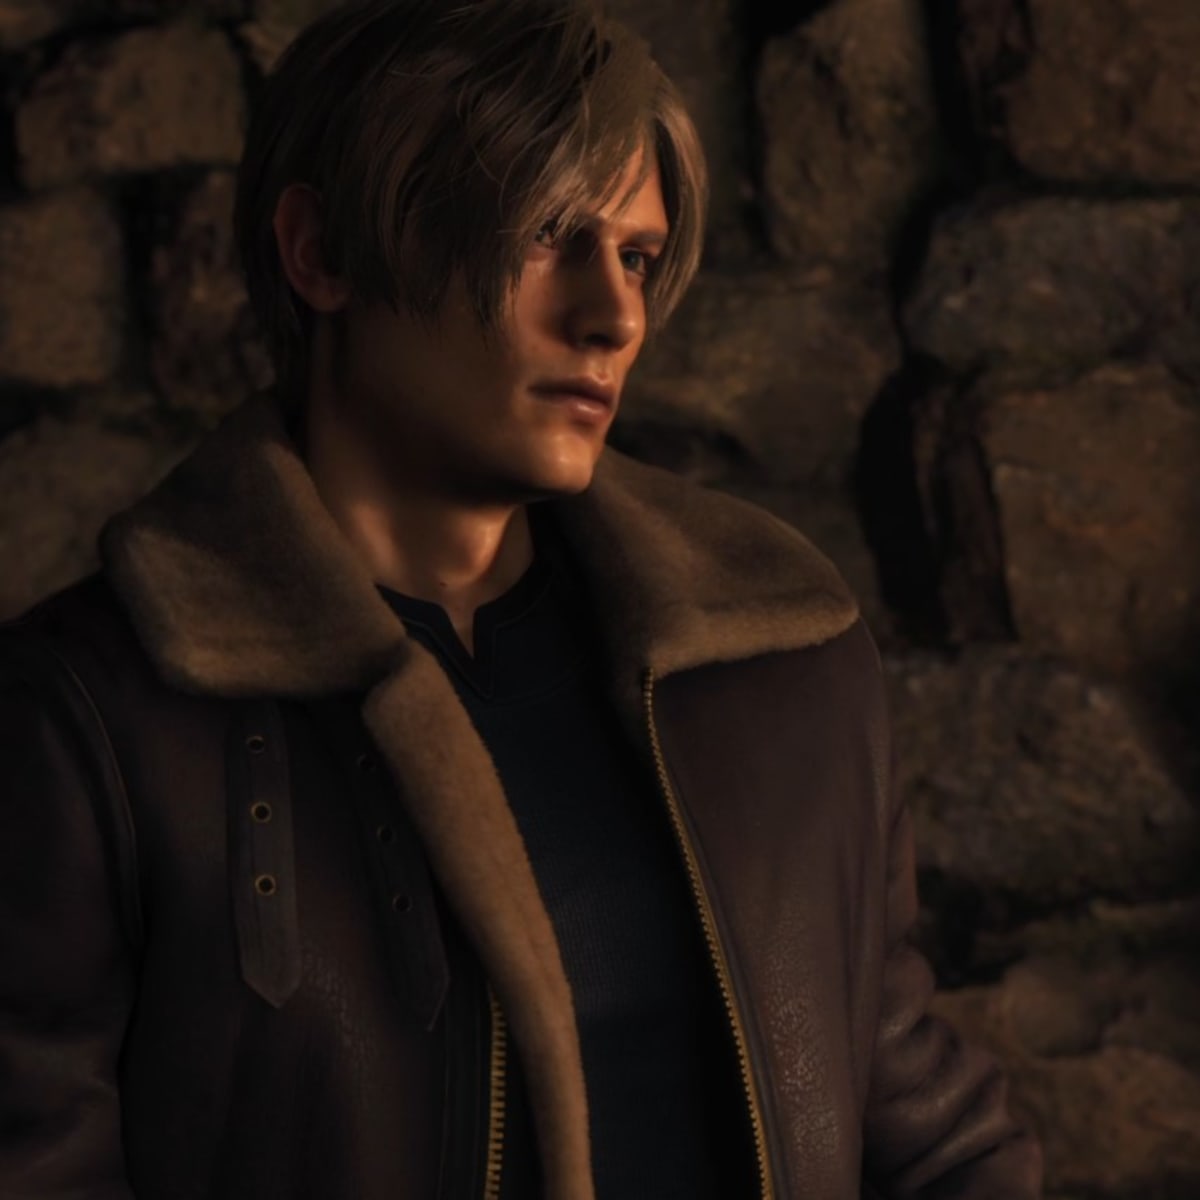 Resident Evil 4 Remake: Chapter 1 Walkthrough